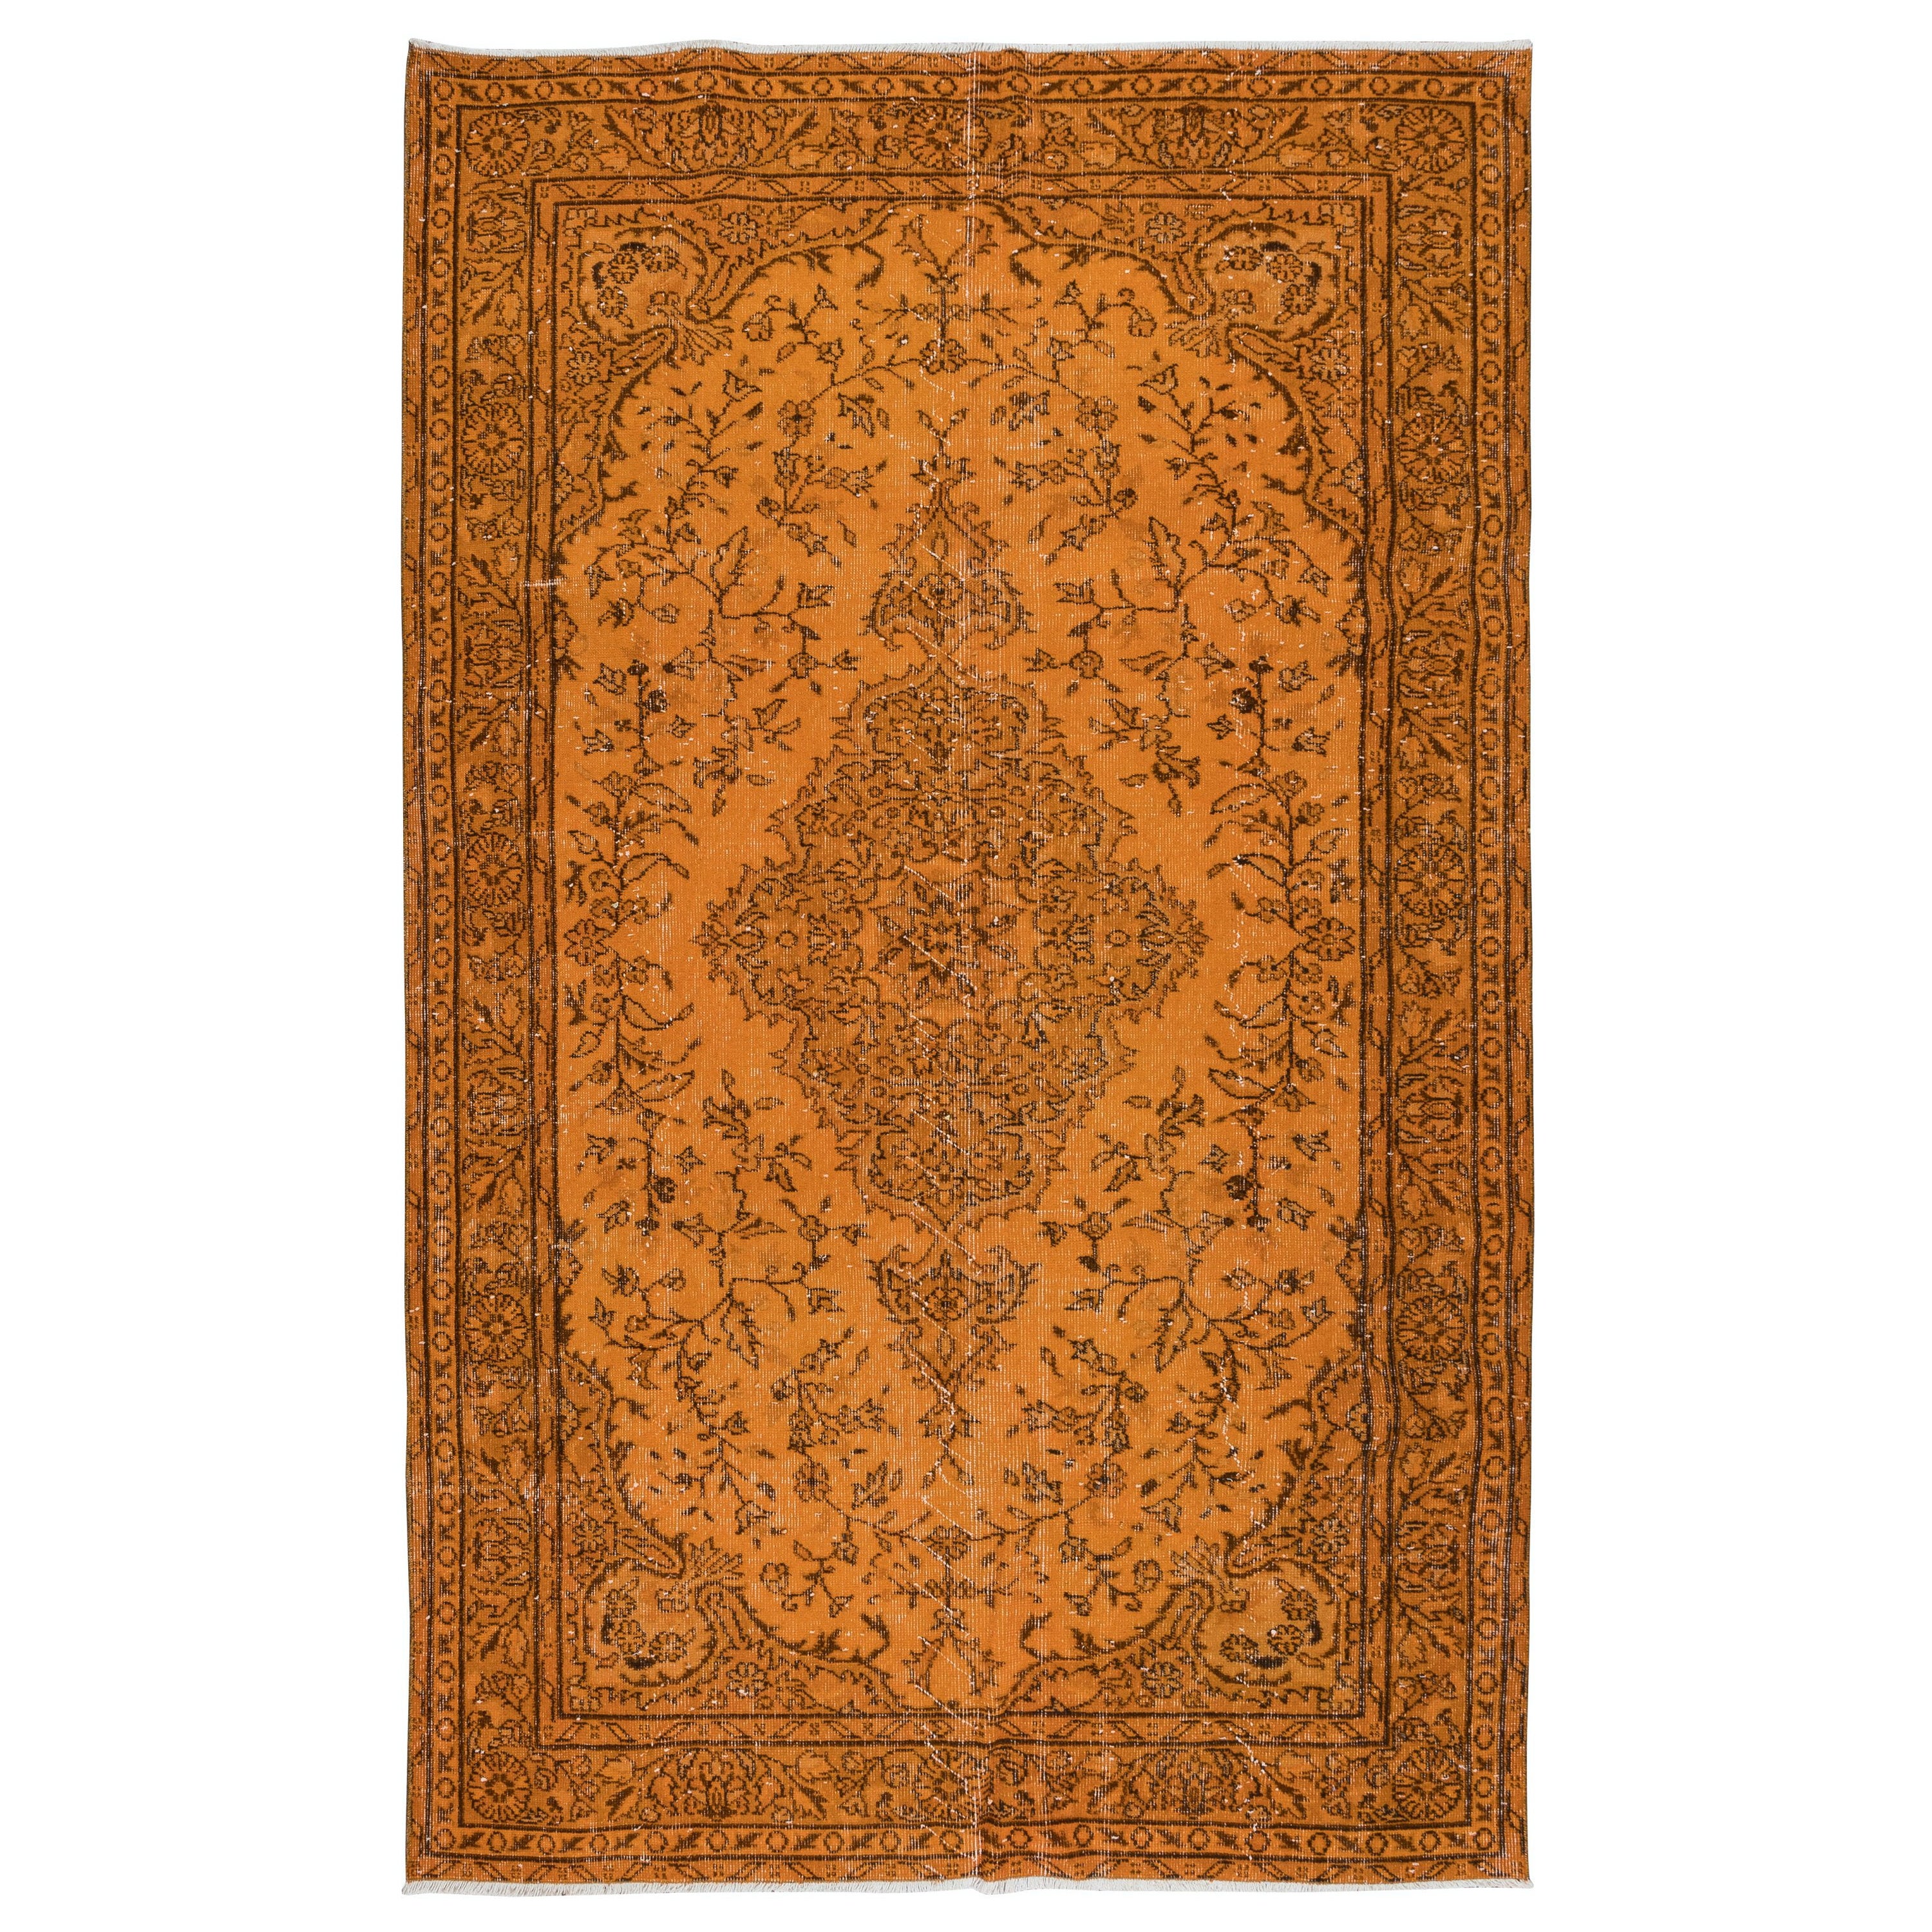 5.7x9 Ft Dekorativer türkischer orangefarbener Teppich, moderner handgefertigter Wollteppich